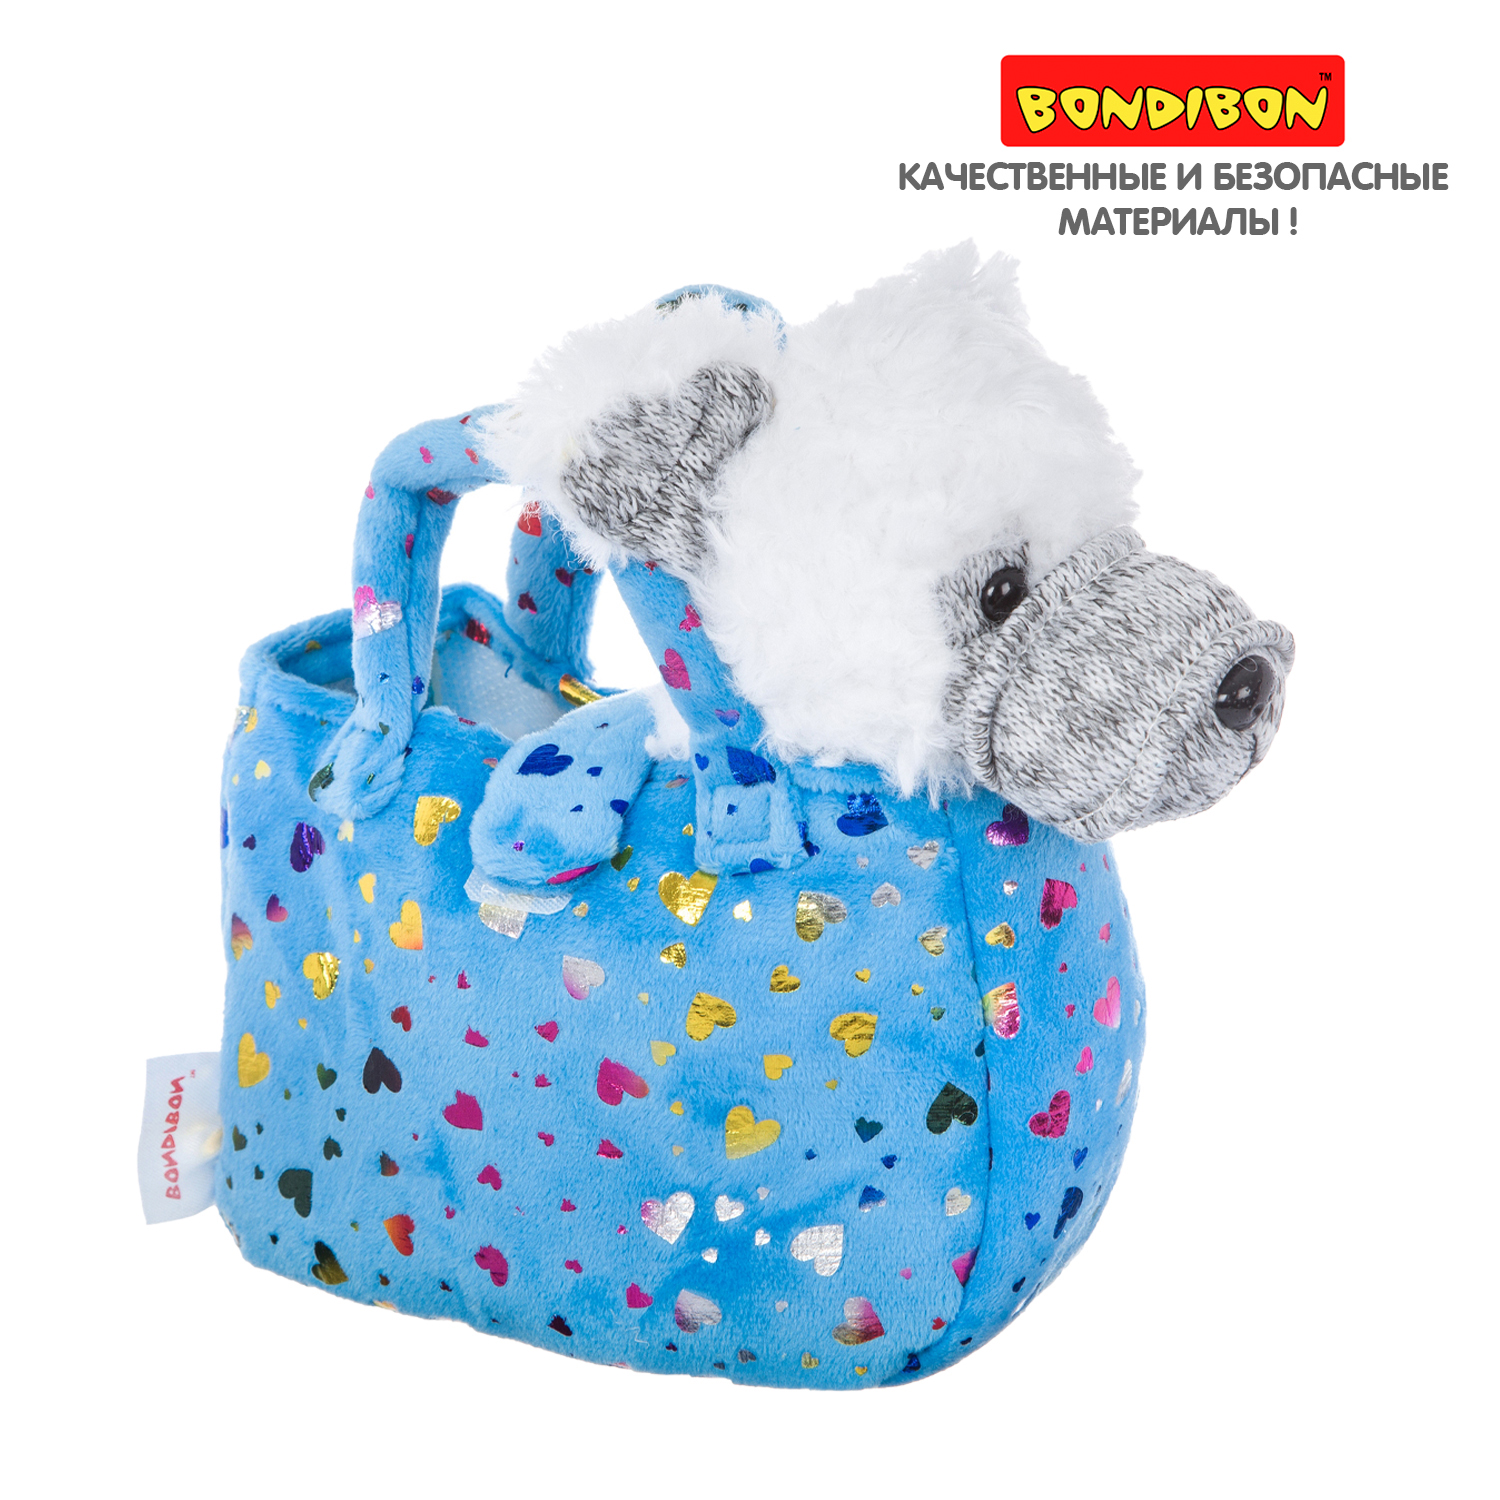 Мягкая игрушка BONDIBON Милота Белый терьер в голубой сумке с сердечками и аксессуарами 19 см - фото 12